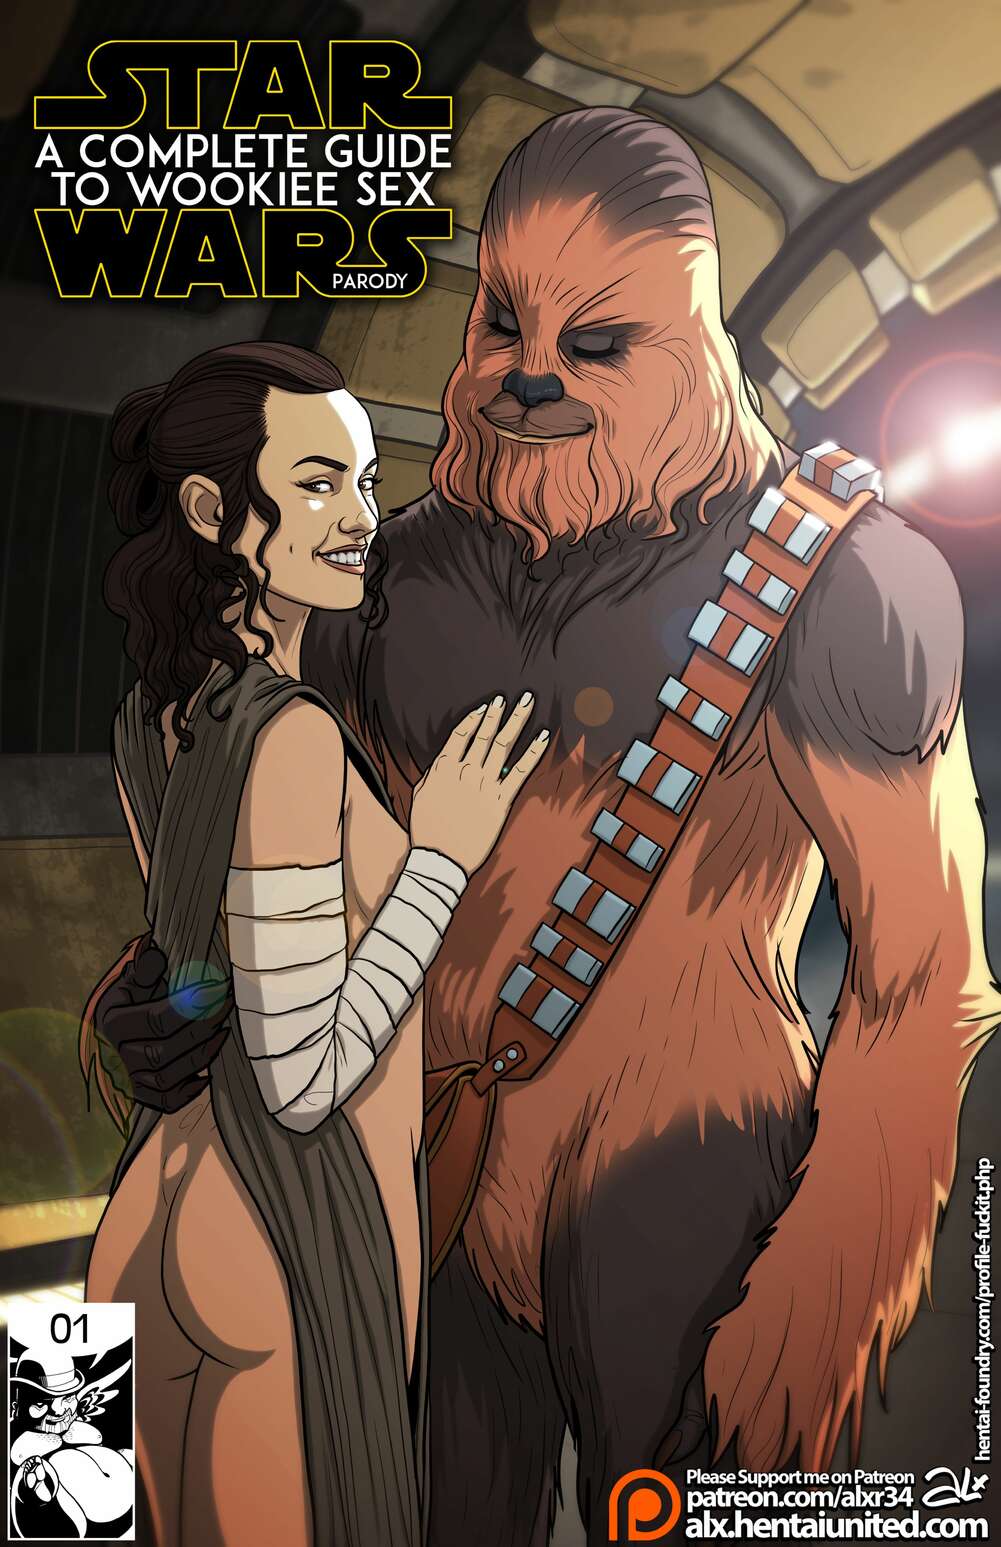 Hot Porn Star Wars Characters - âœ…ï¸ Porn comic A Complete Guide To Wookie Sex. Part 1. Star Wars. Sex comic  and Chubaka have âœ…ï¸ | Alxr34 | Porn comics hentai adult only |  wporncomics.com